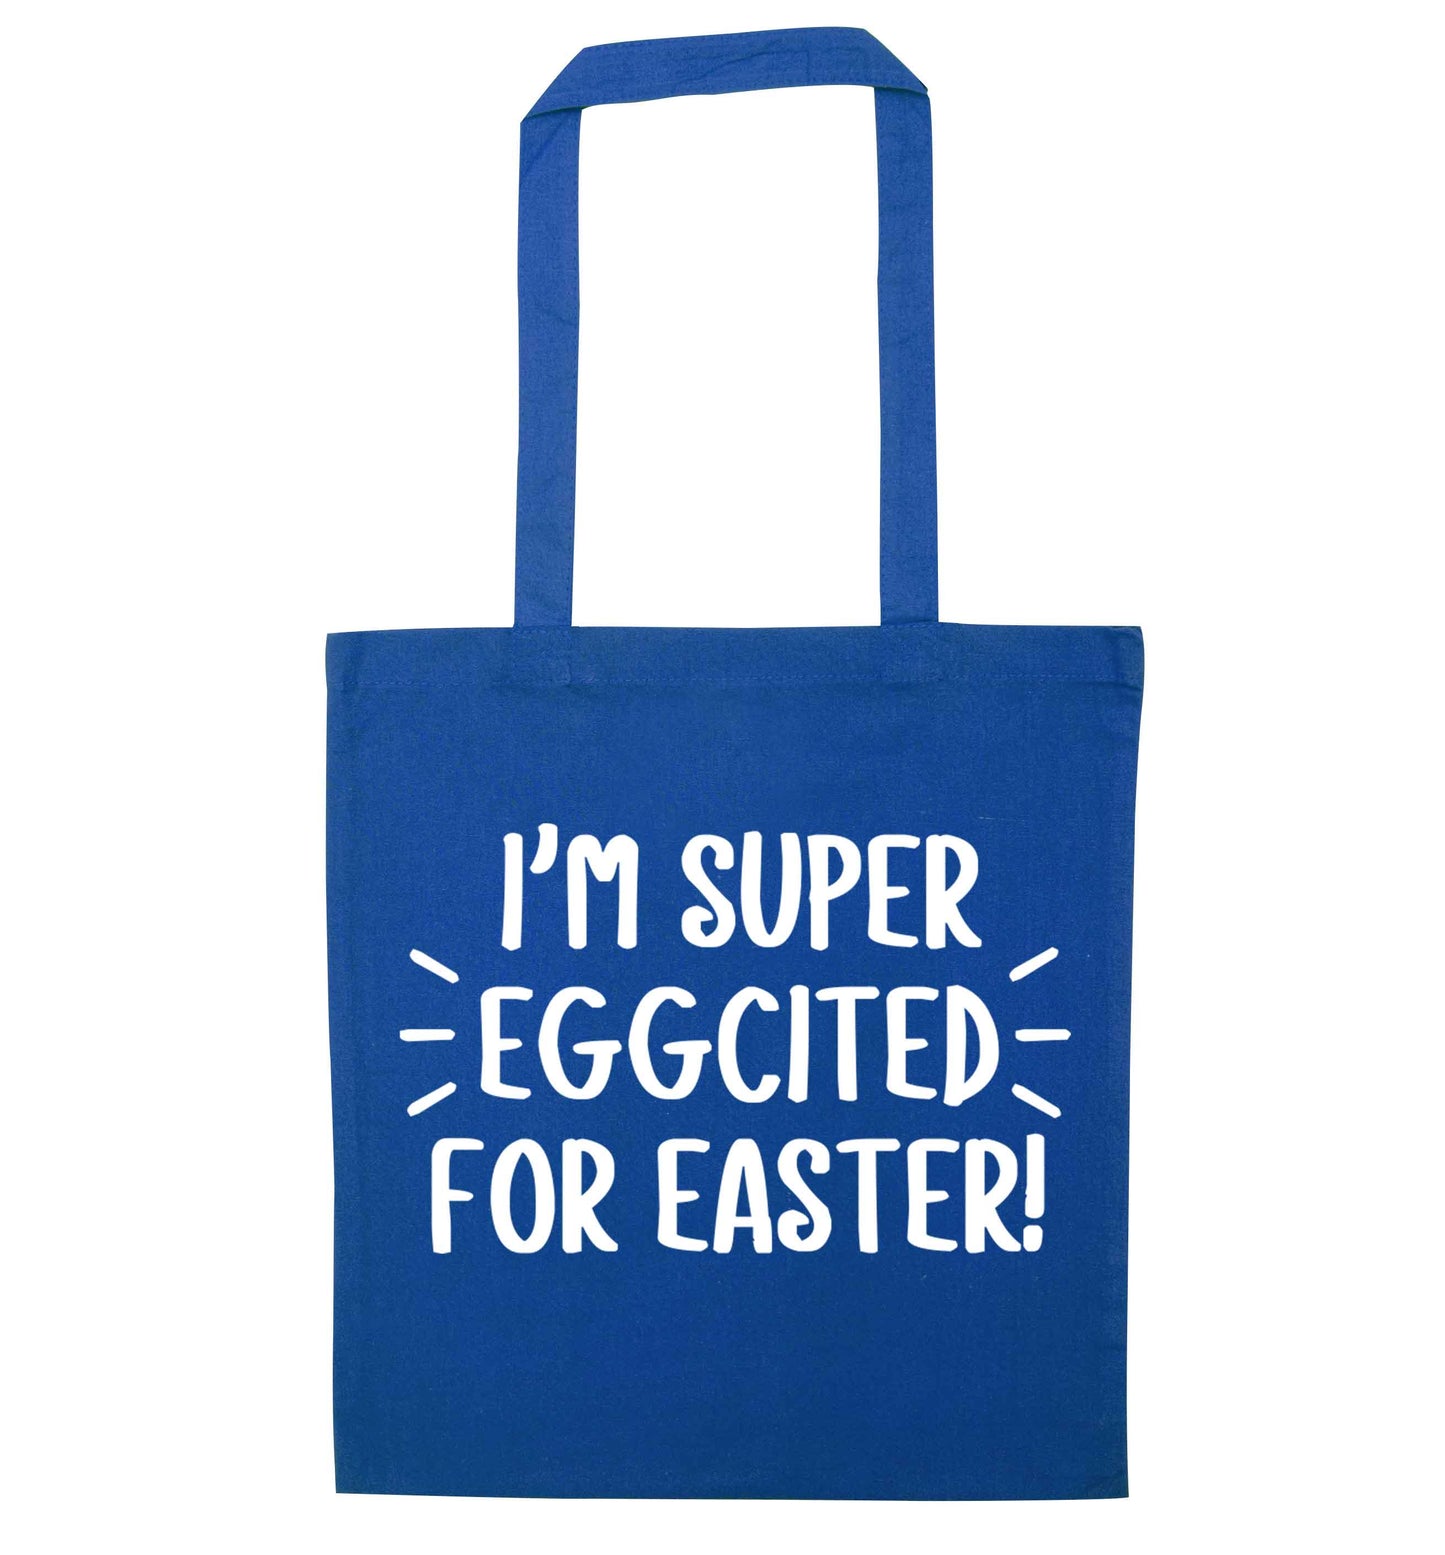 I'm super eggcited for Easter blue tote bag